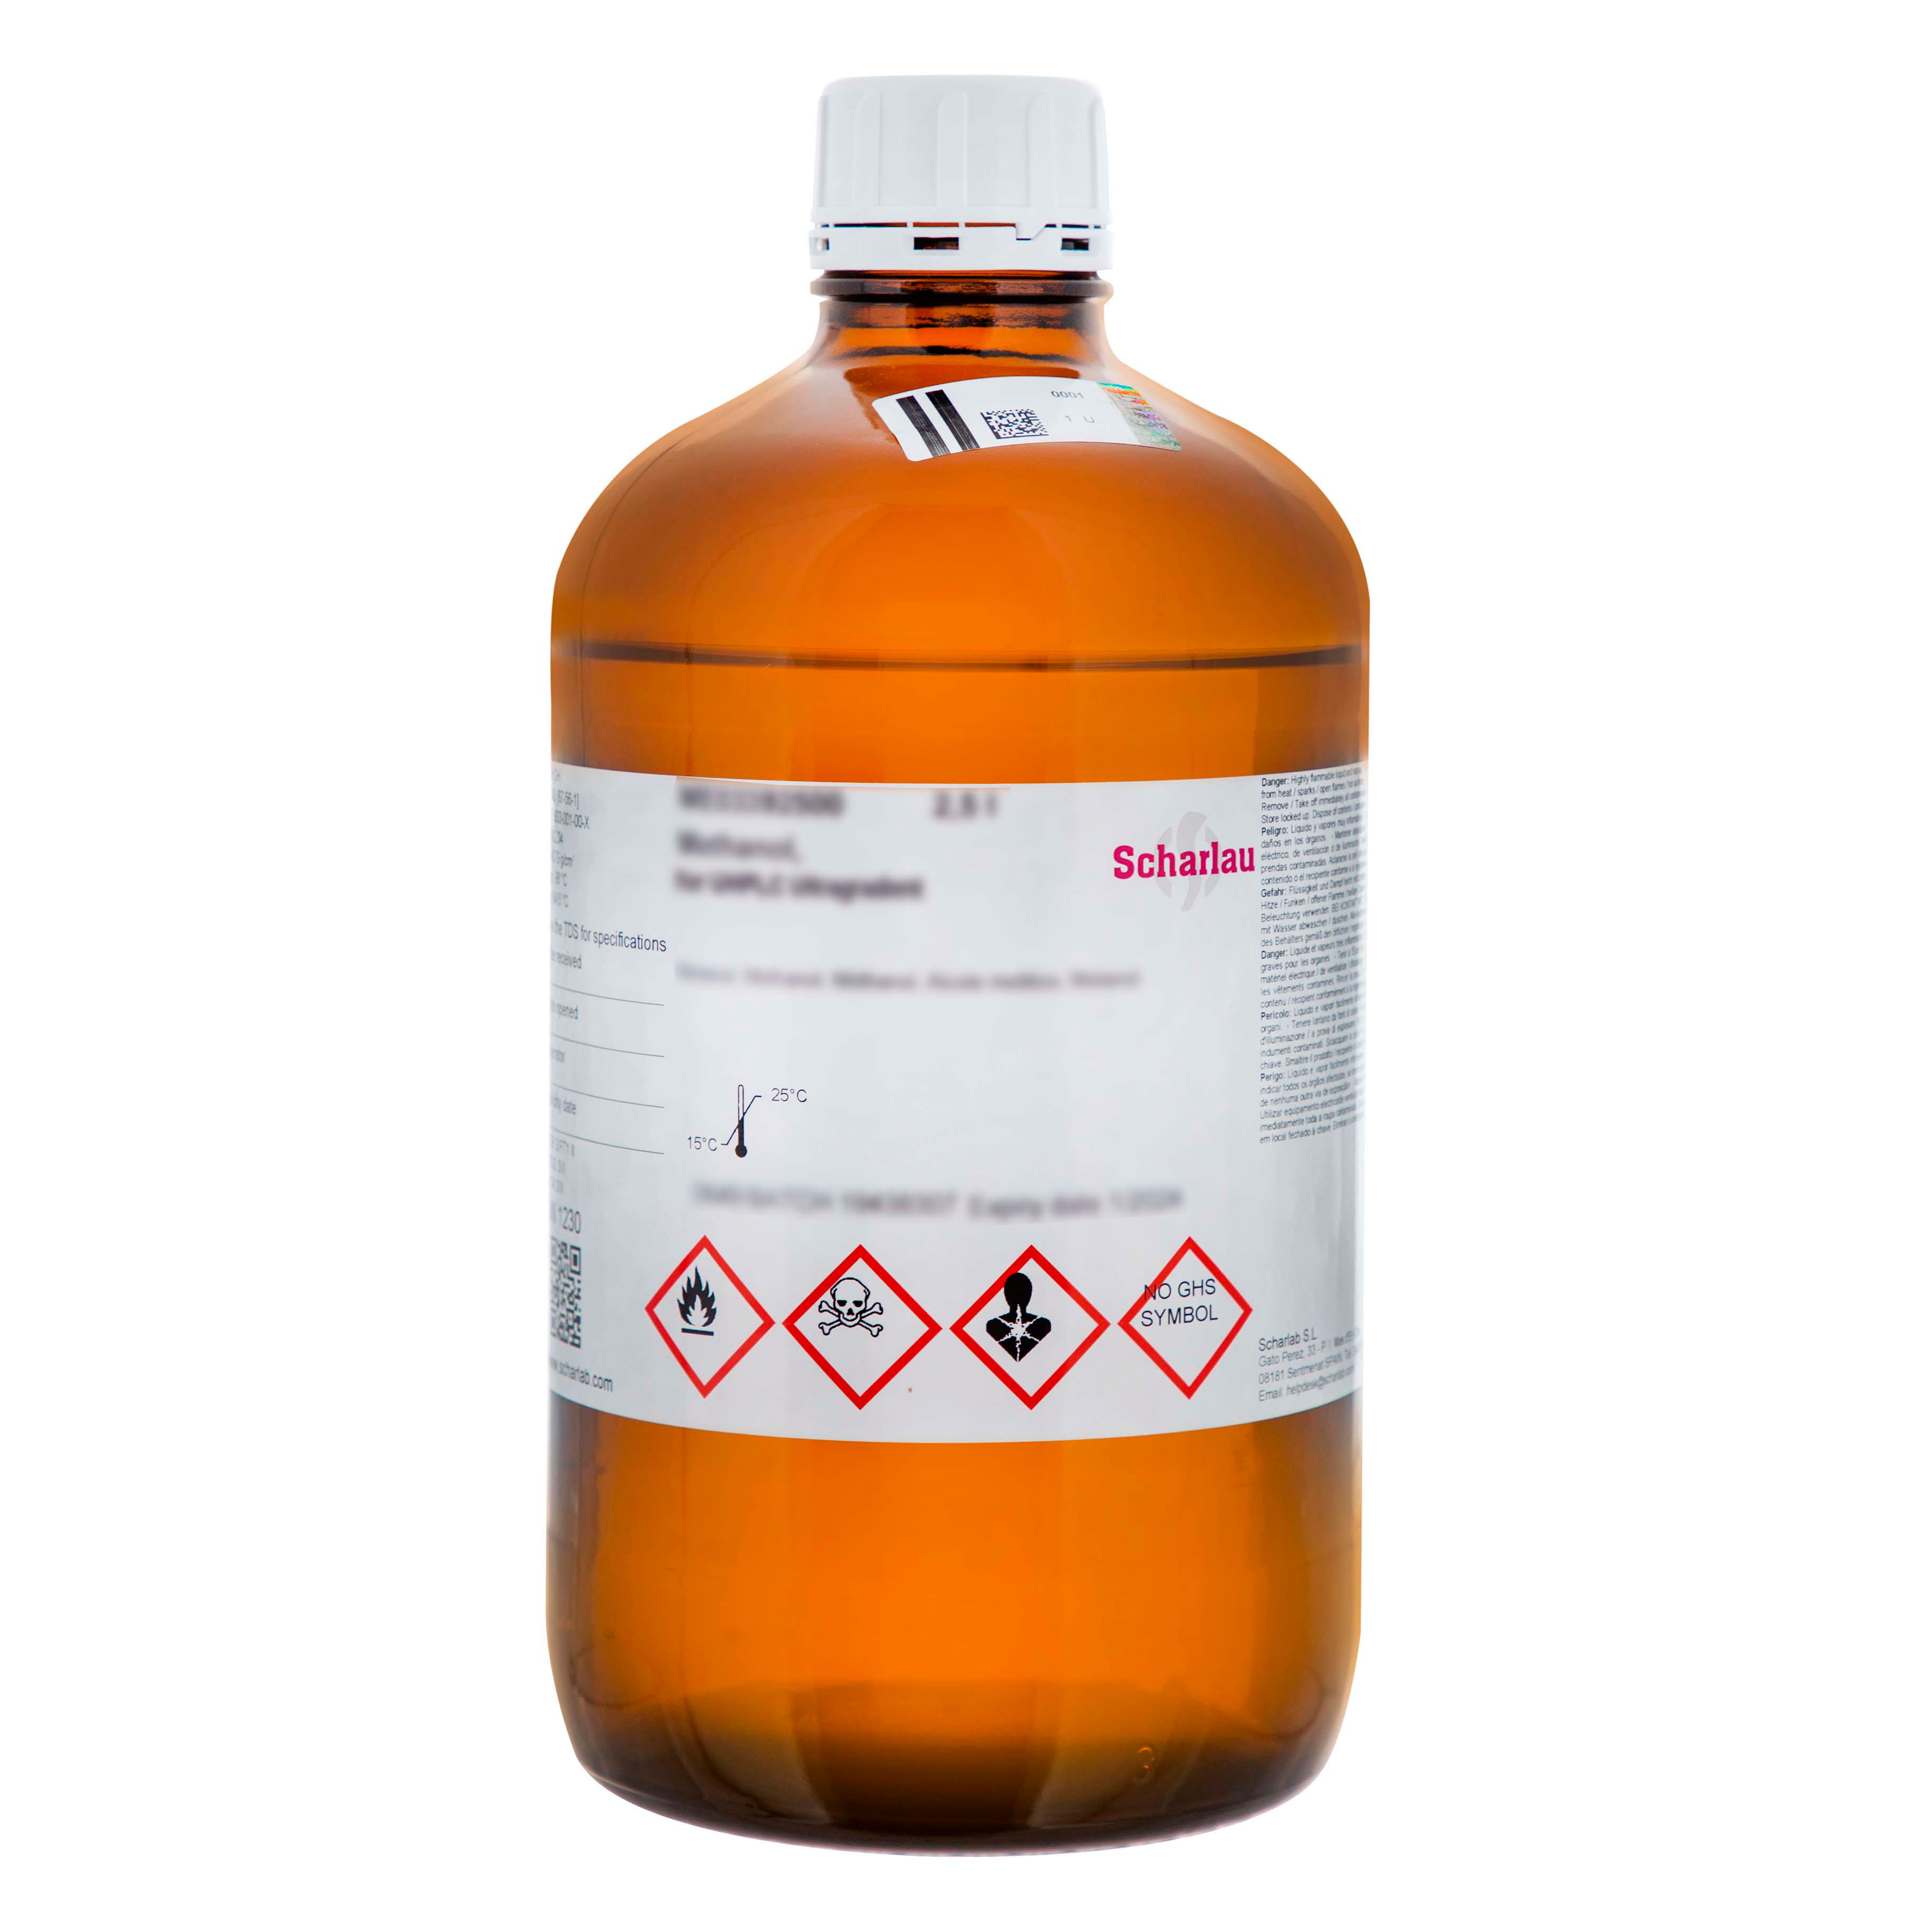 Plata sulfato, solución 1% en ácido sulfúrico, para la determinación de la DQO, según ISO 6060